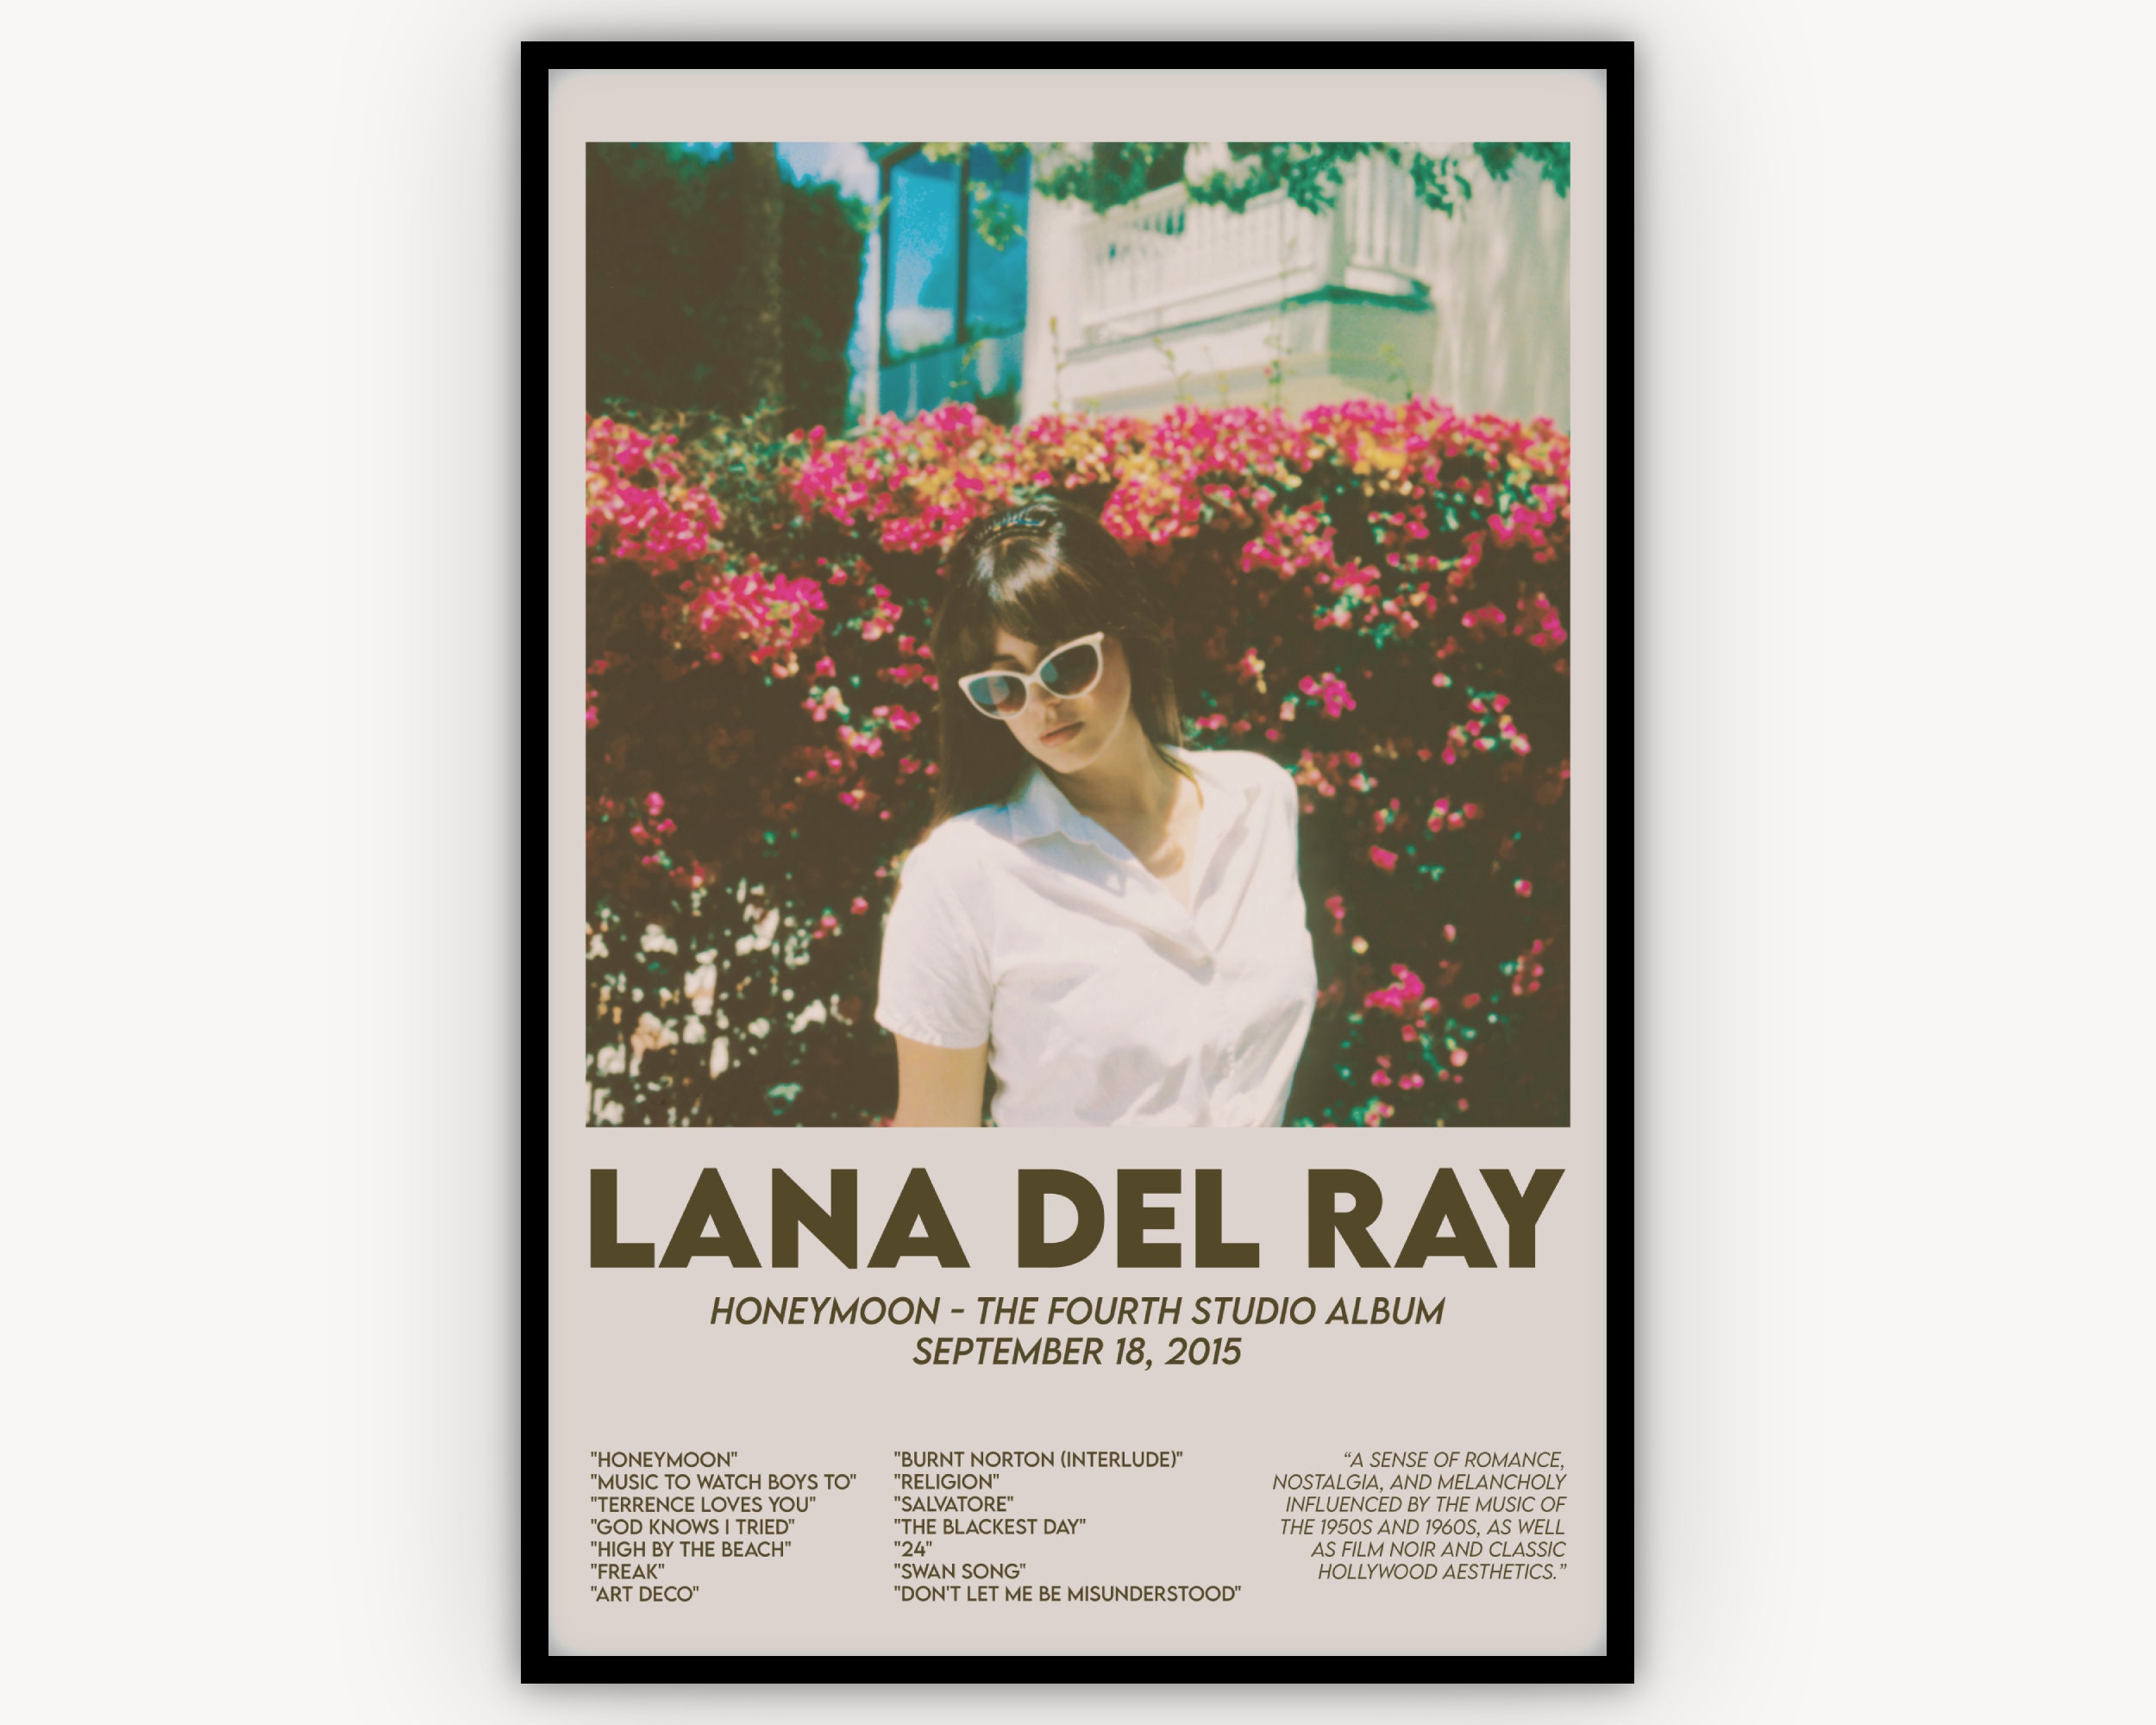 honeymoon  Lana del rey albums, Lana del rey honeymoon, Lana del rey songs